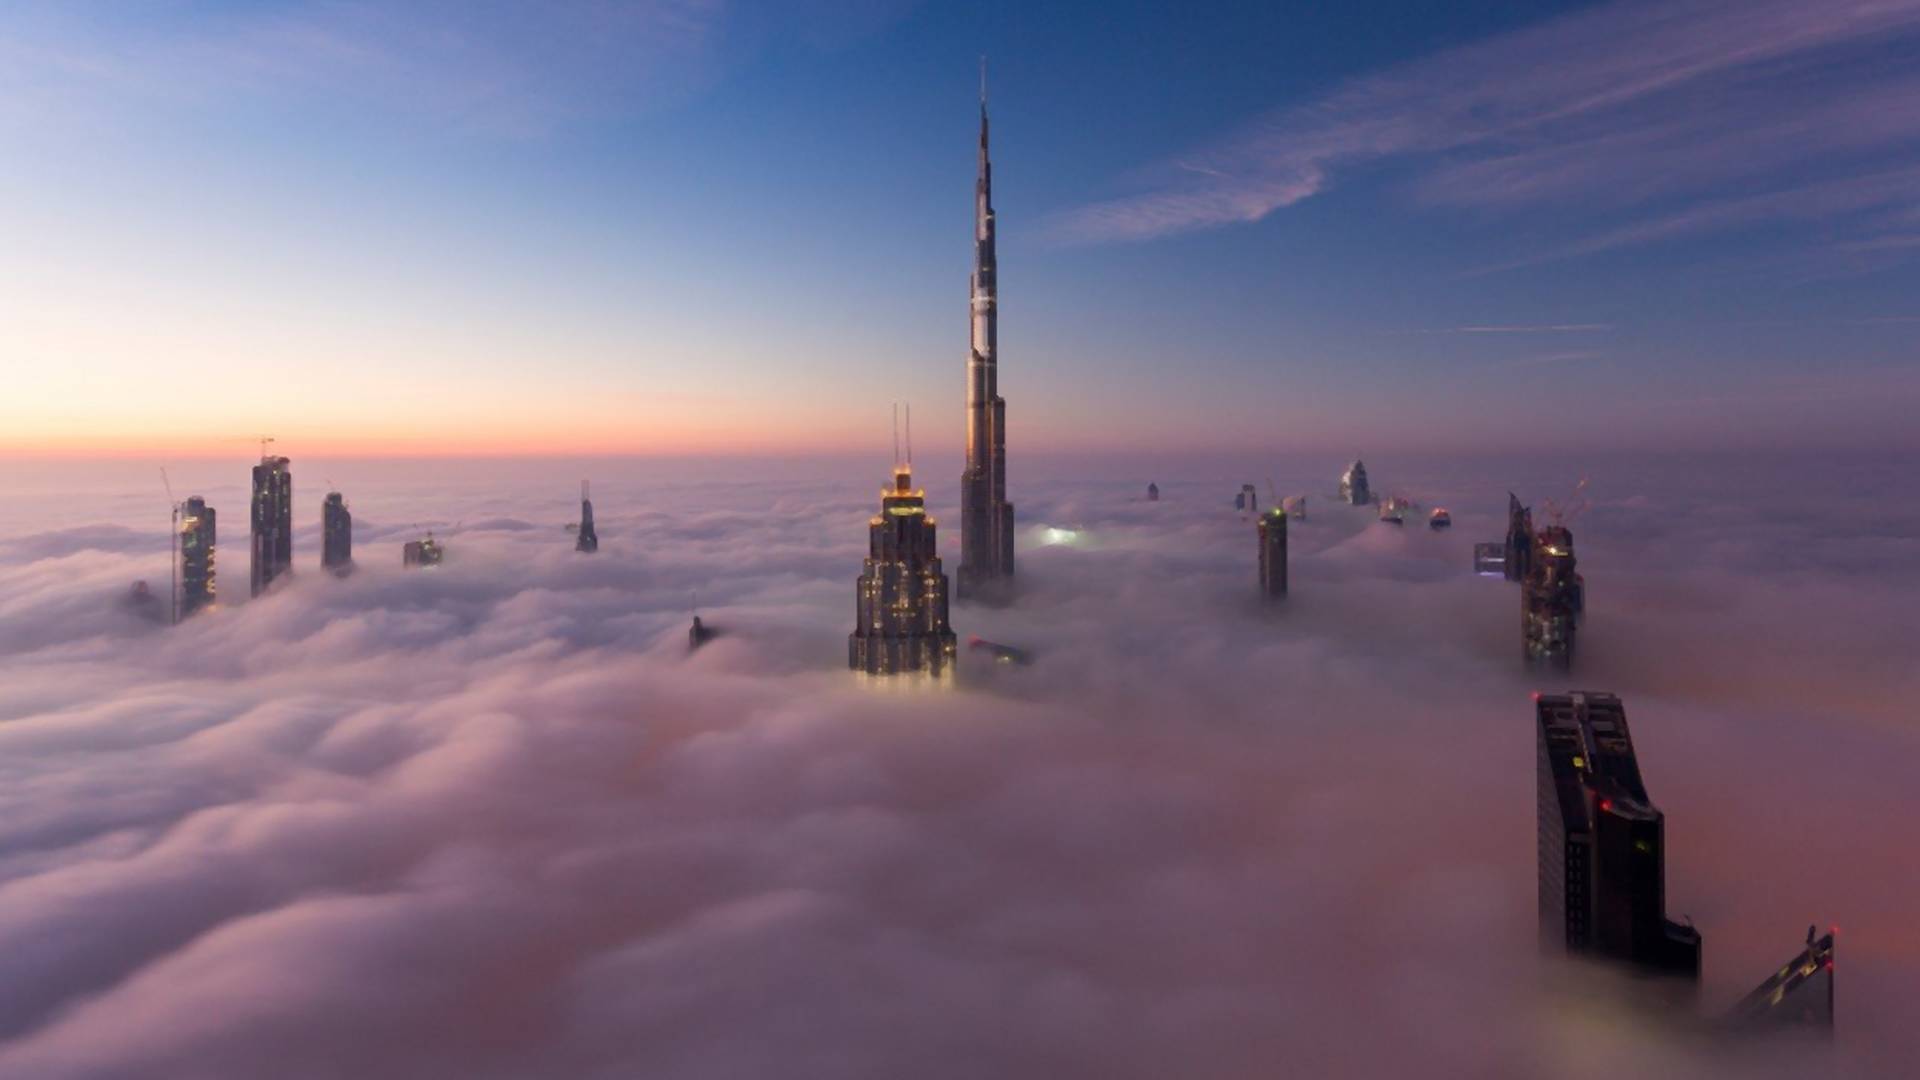 Dubai ima novu megalomansku atrakciju i svet je prilično zbunjen